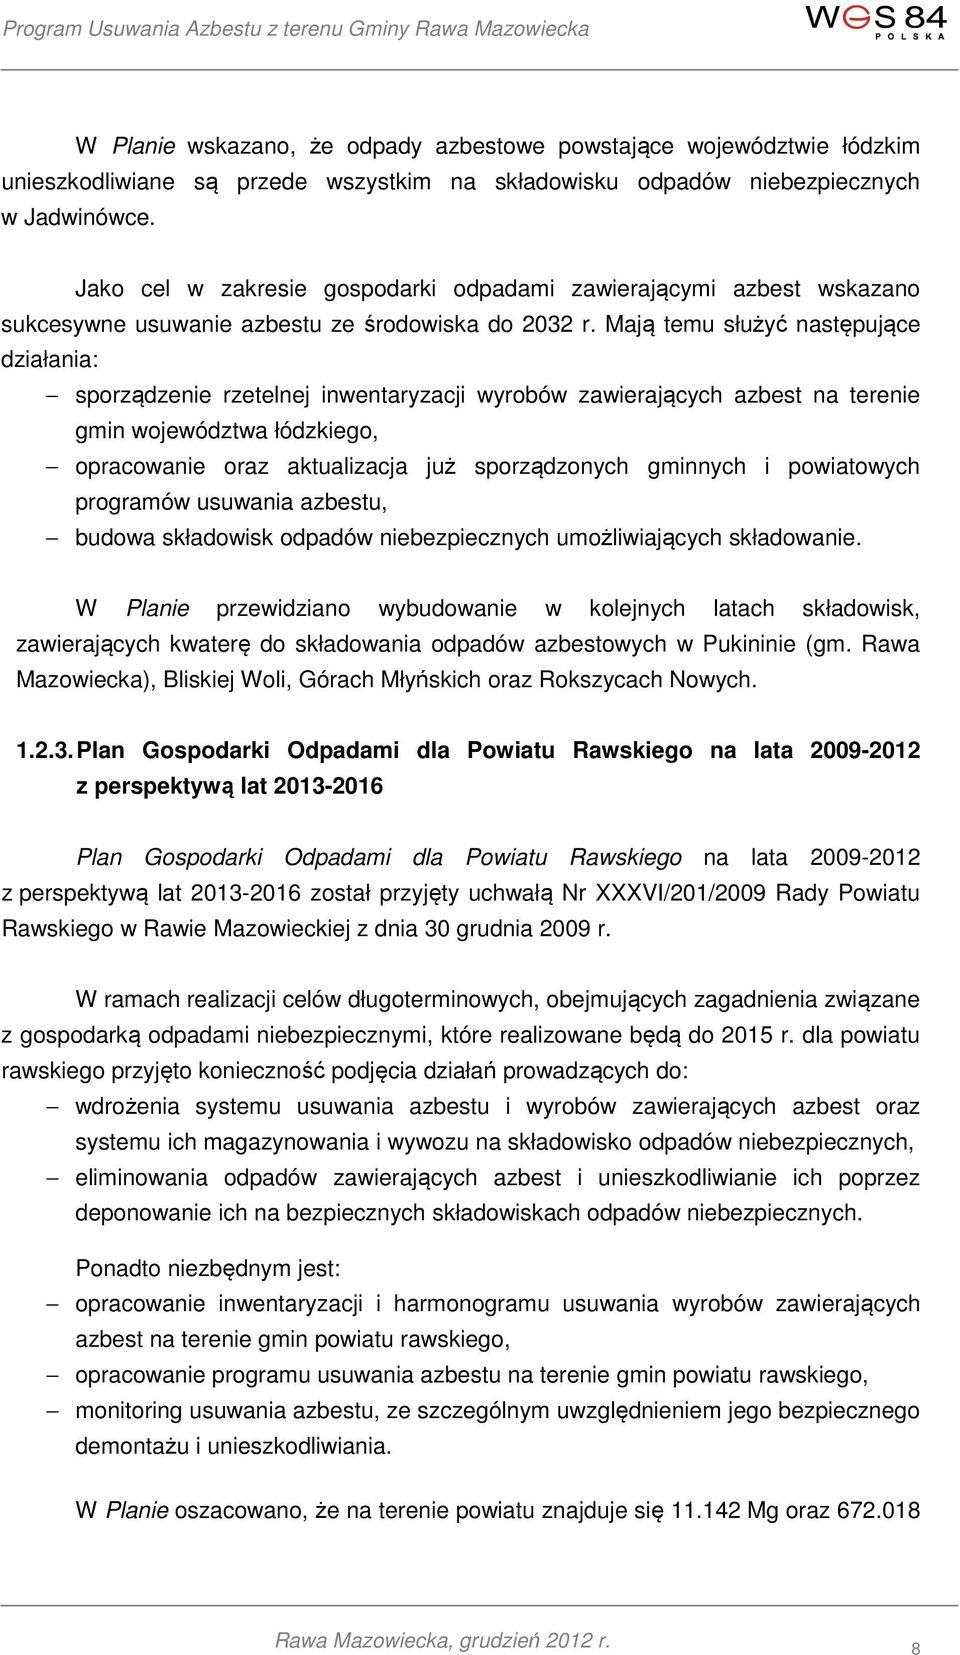 Mają temu służyć następujące działania: sporządzenie rzetelnej inwentaryzacji wyrobów zawierających azbest na terenie gmin województwa łódzkiego, opracowanie oraz aktualizacja już sporządzonych